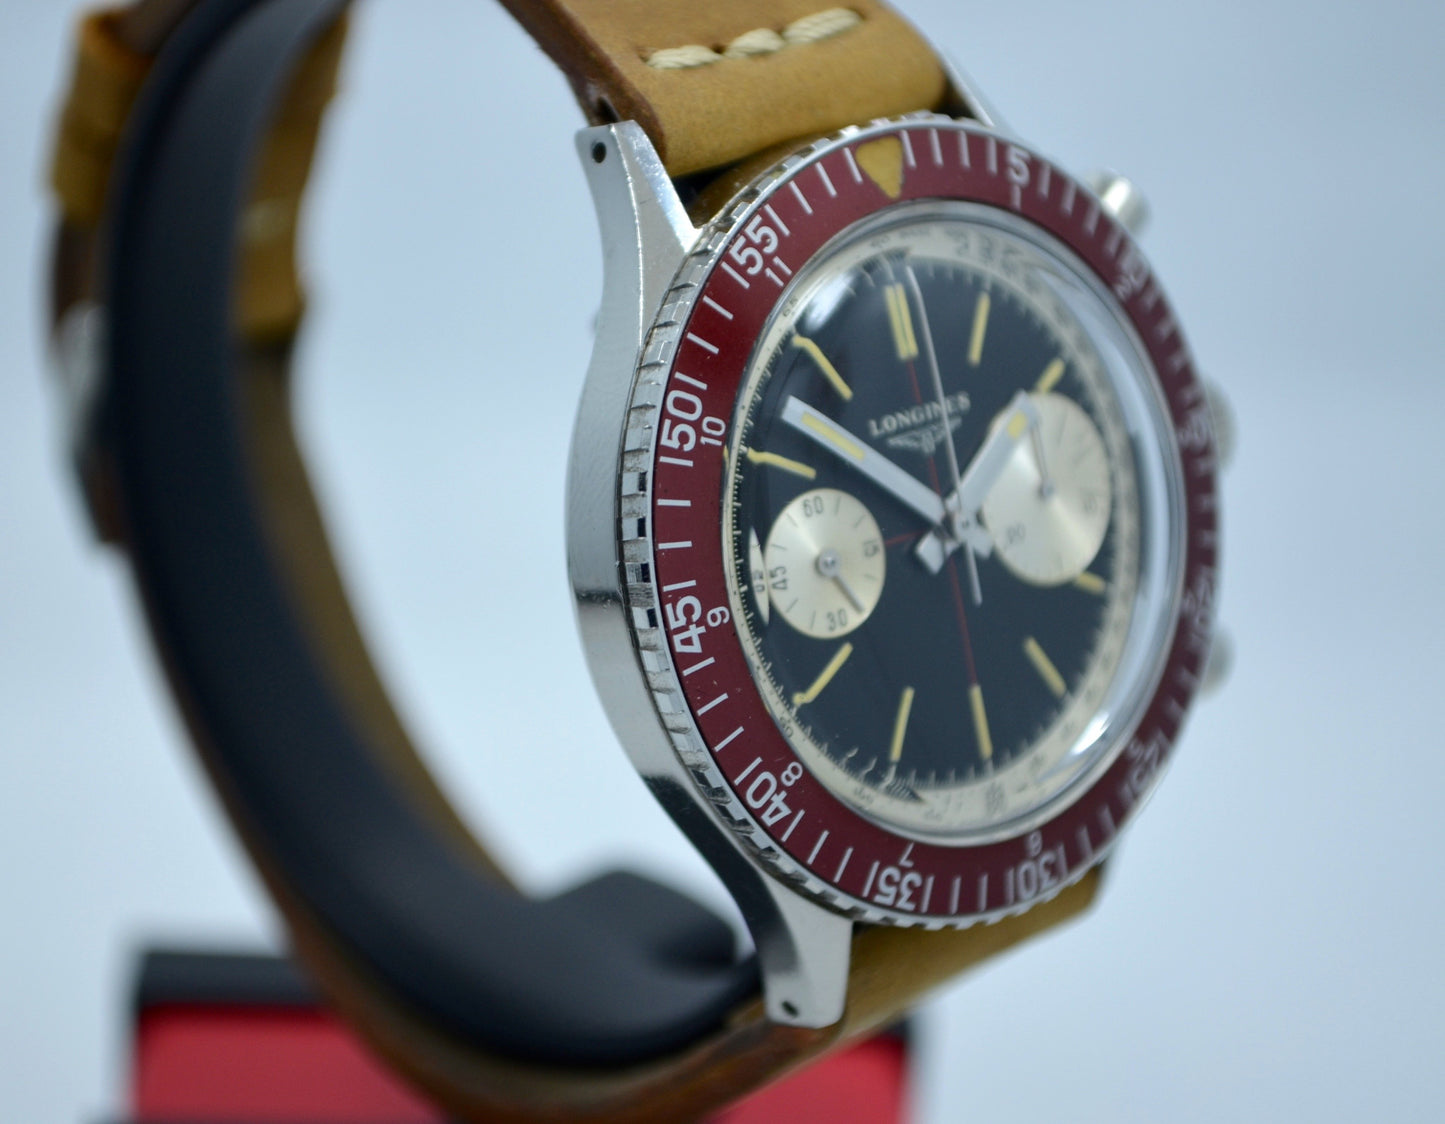 Vintage Longines 30CH "Big Eye" Steel Chronograph Wristwatch - Hashtag Watch Company